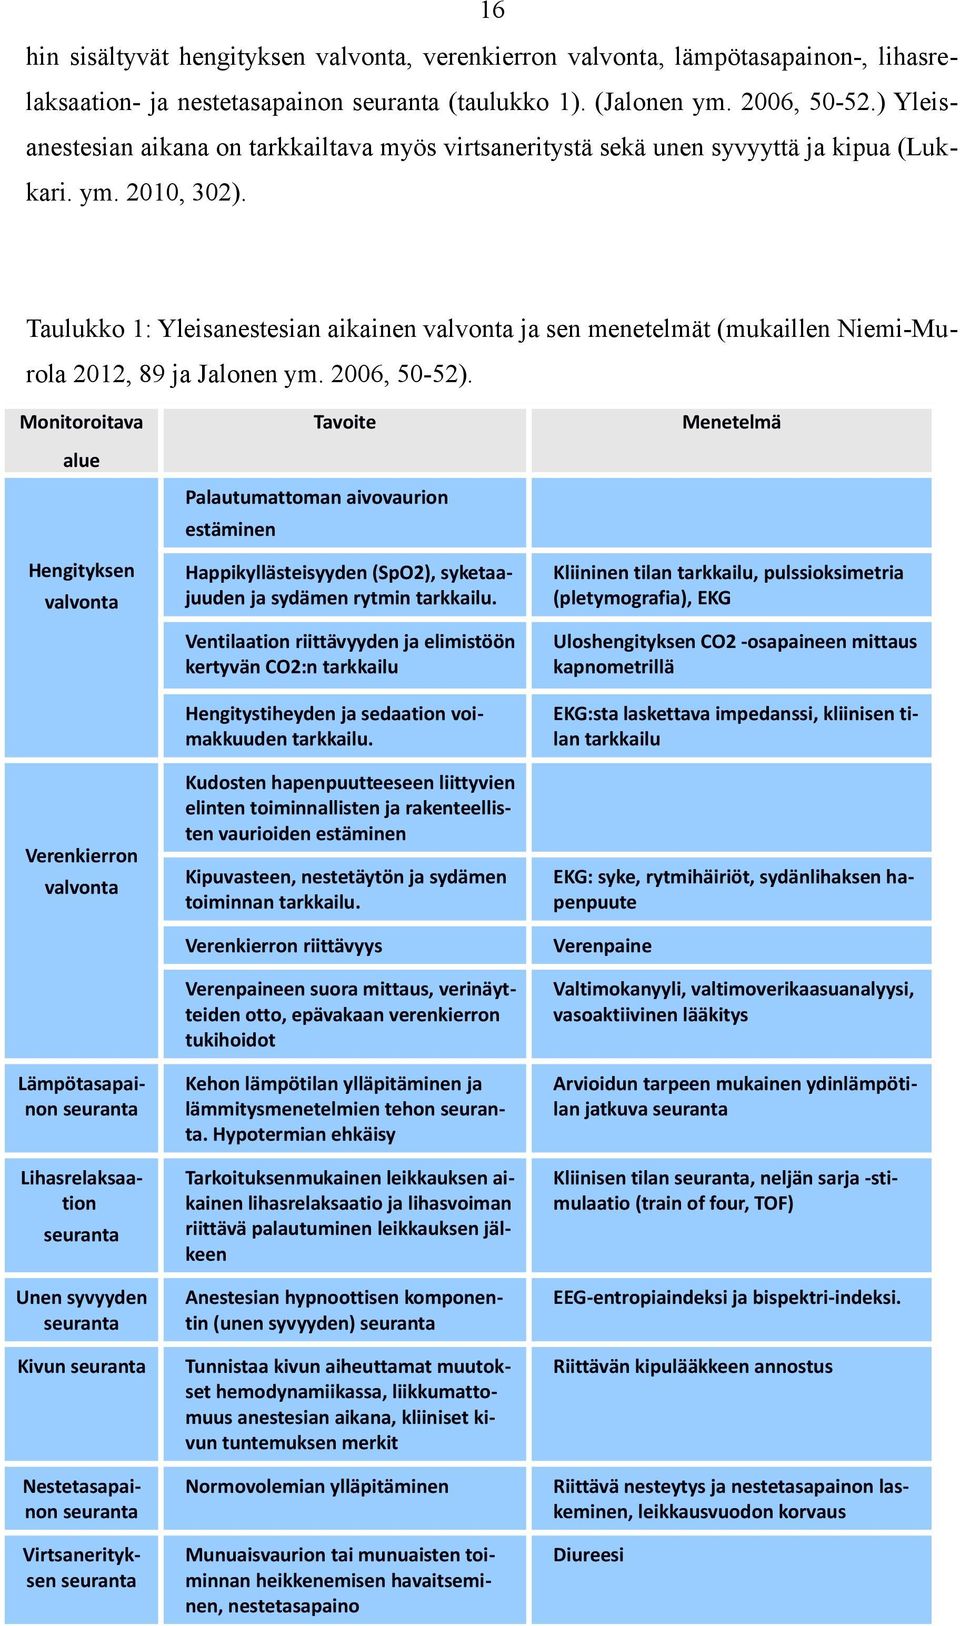 Taulukko 1: Yleisanestesian aikainen valvonta ja sen menetelmät (mukaillen Niemi-Murola 2012, 89 ja Jalonen ym. 2006, 50-52).